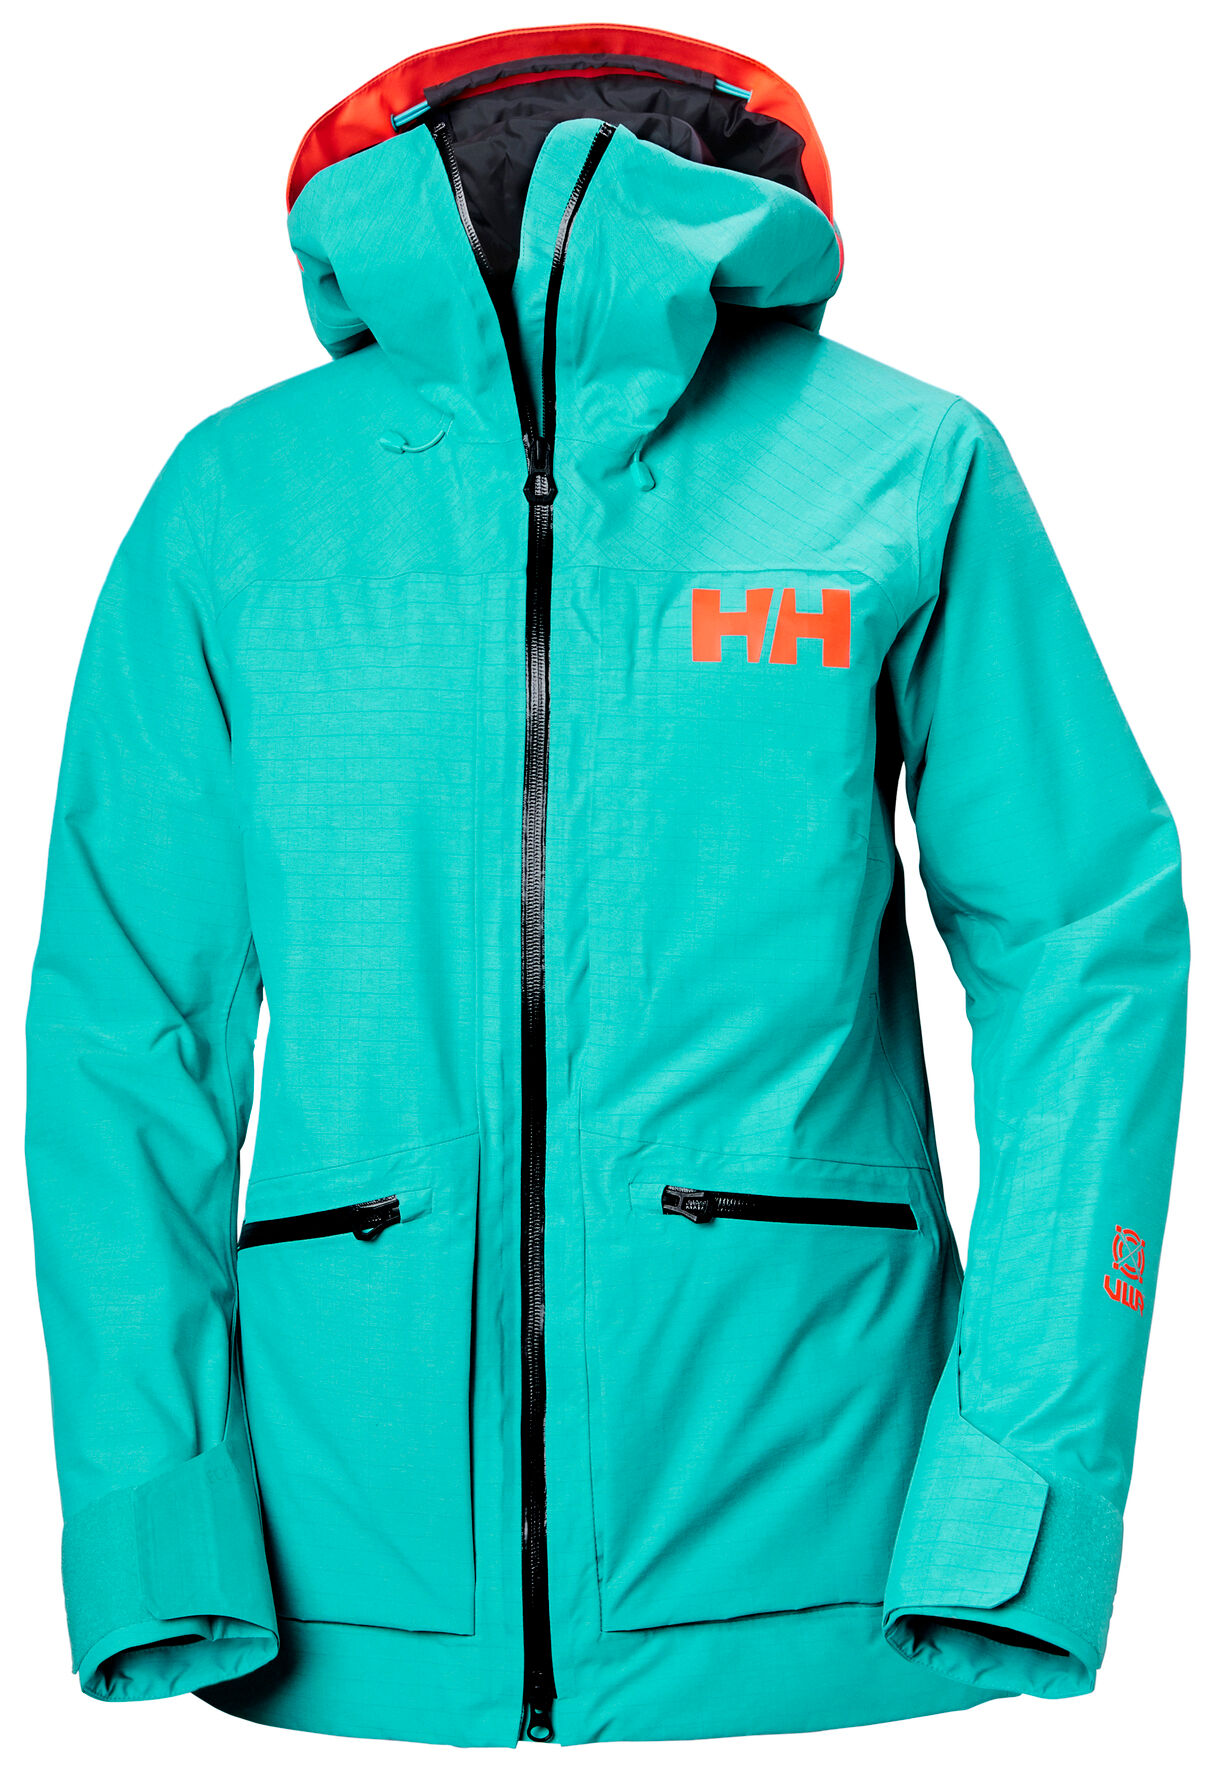 Helly Hansen Powderqueen 3.0 Jacket - Ski jacket - Women's